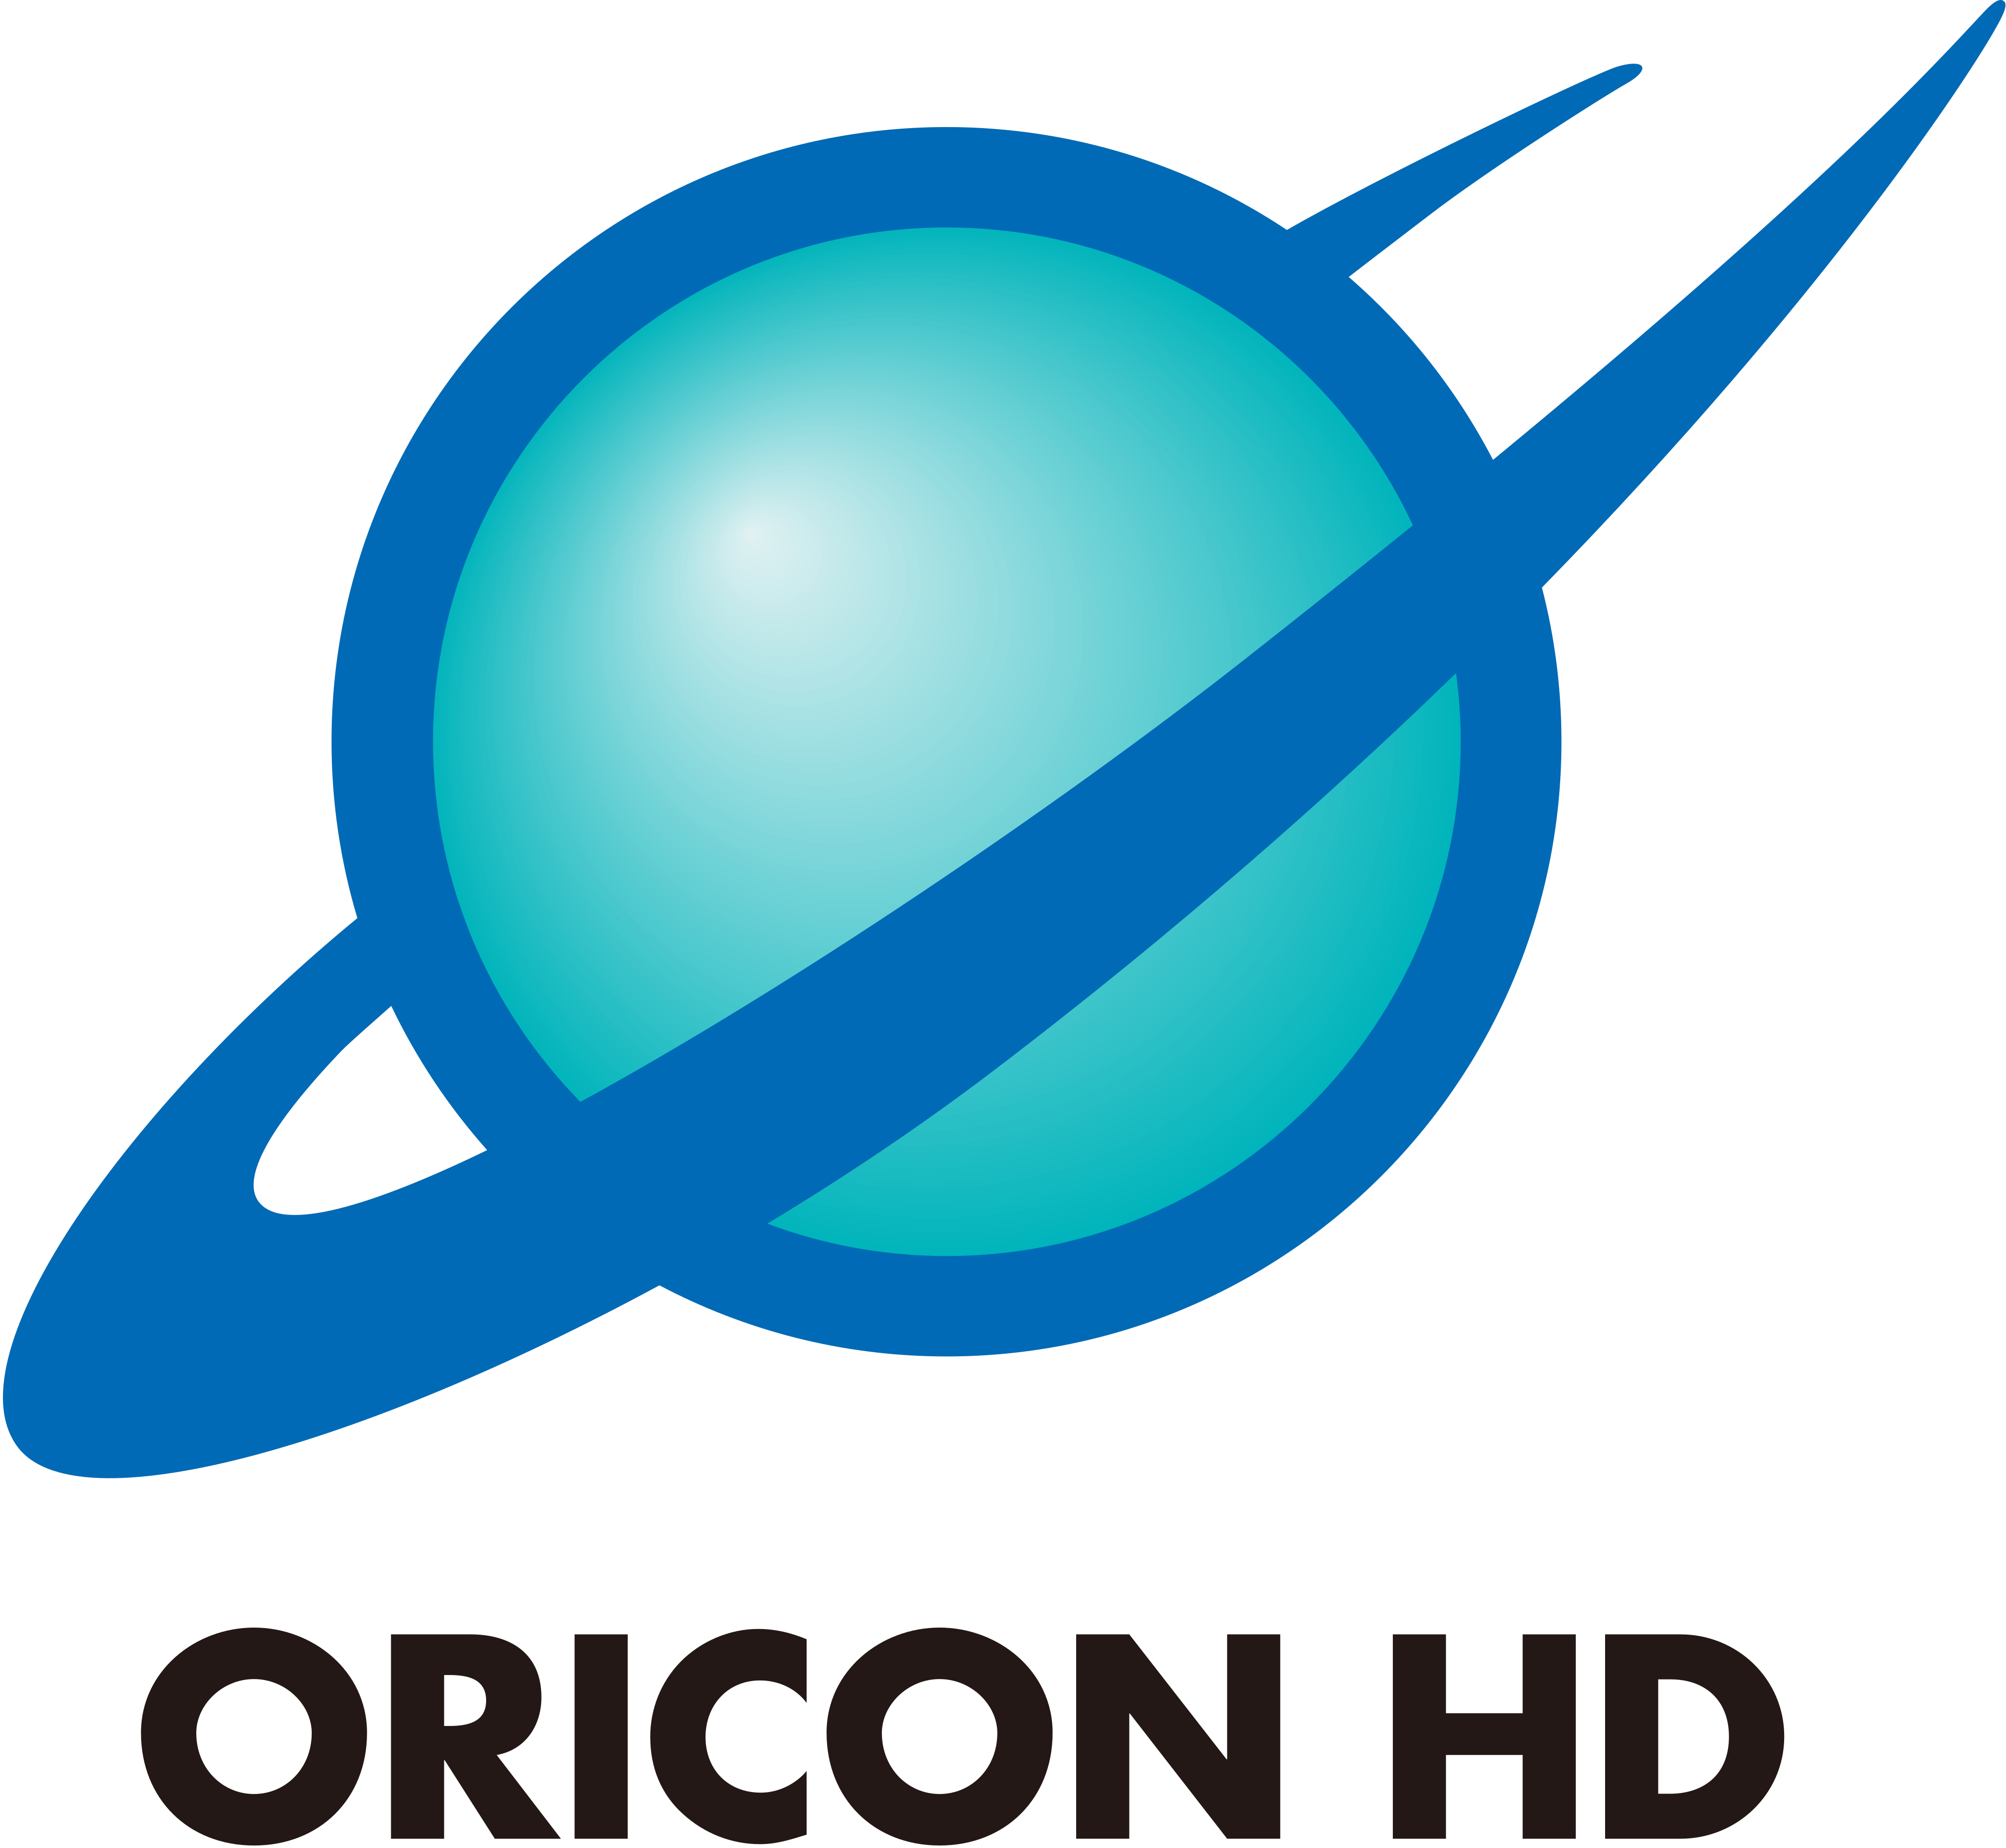 Oricon HD